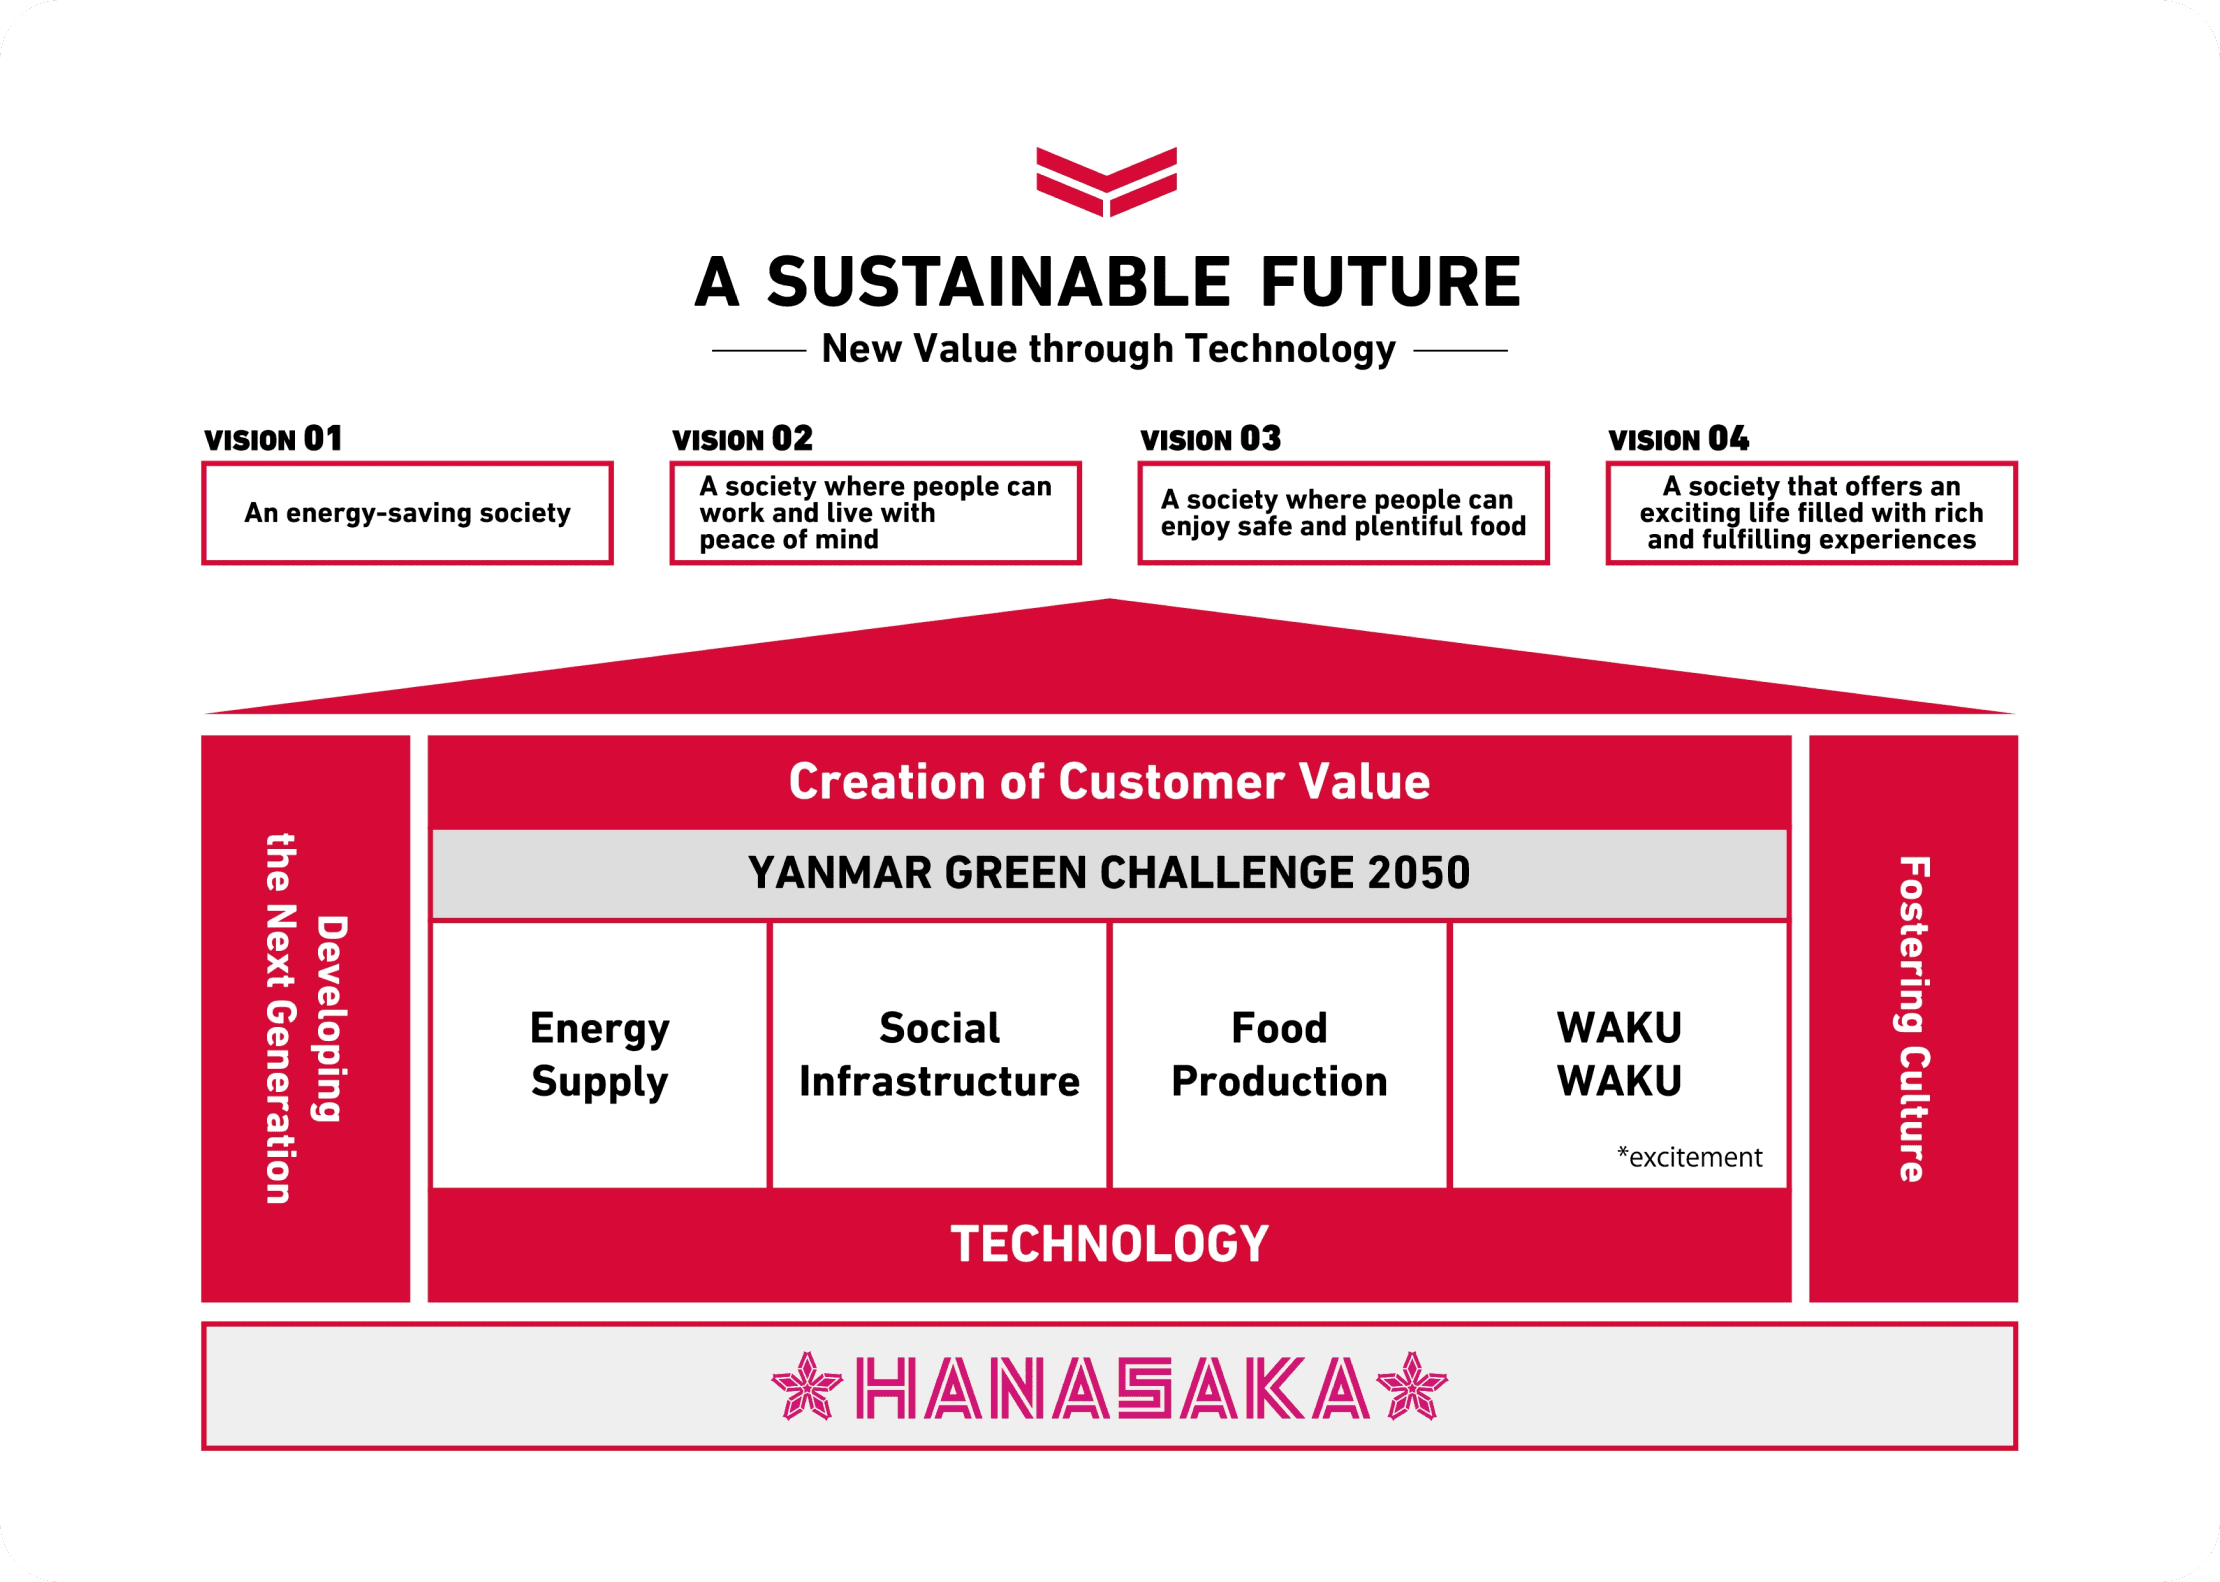 Il diagramma mostra ciascuna attività aziendale, le quattro società di FUTURE VISION e A SUSTAINABLE FUTURE costruite in sequenza sulle fondamenta di HANASAKA.